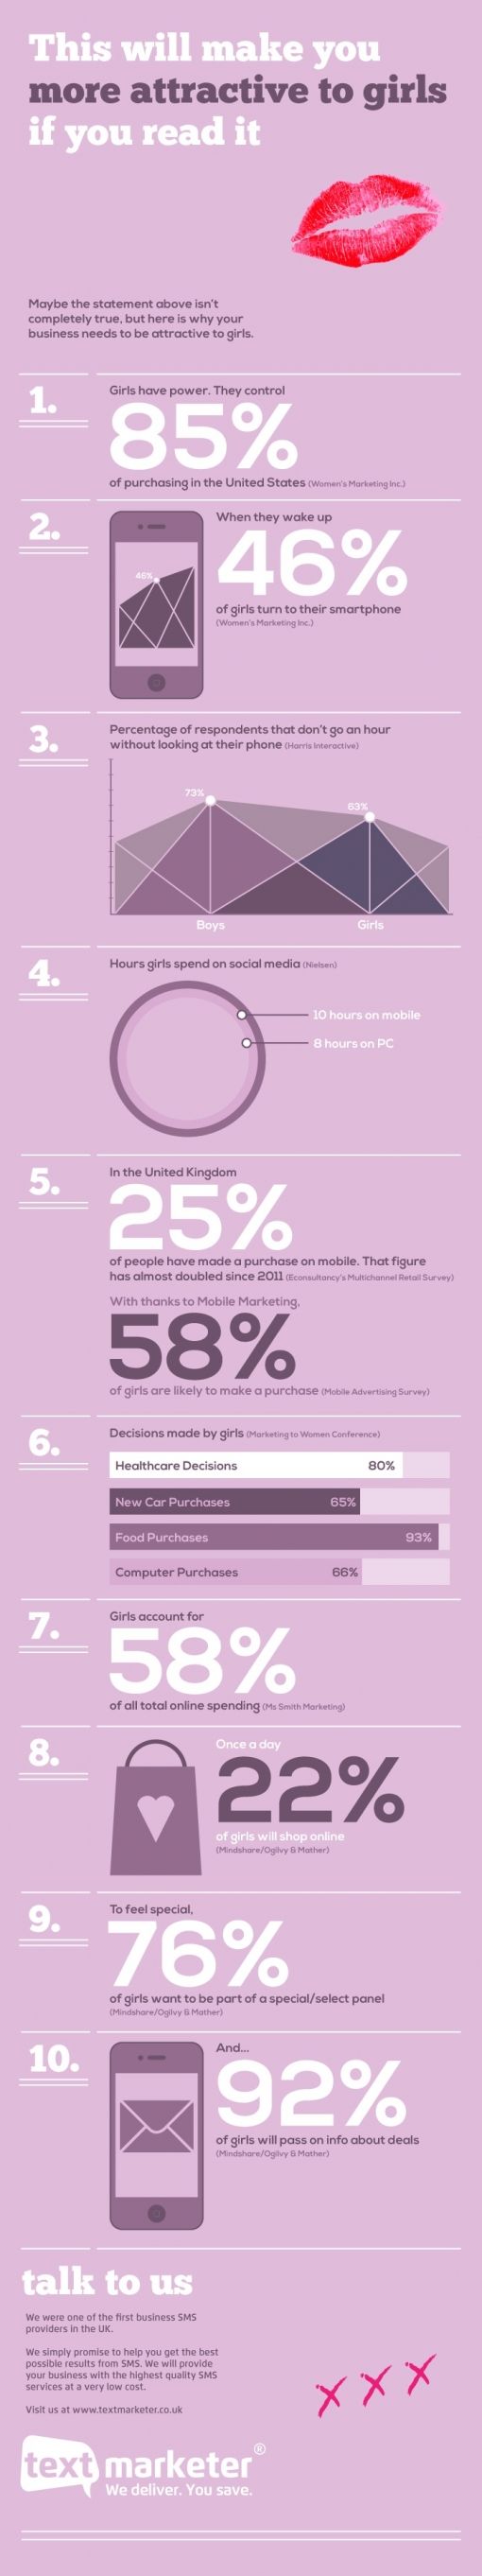 girl-power-infographic.jpg